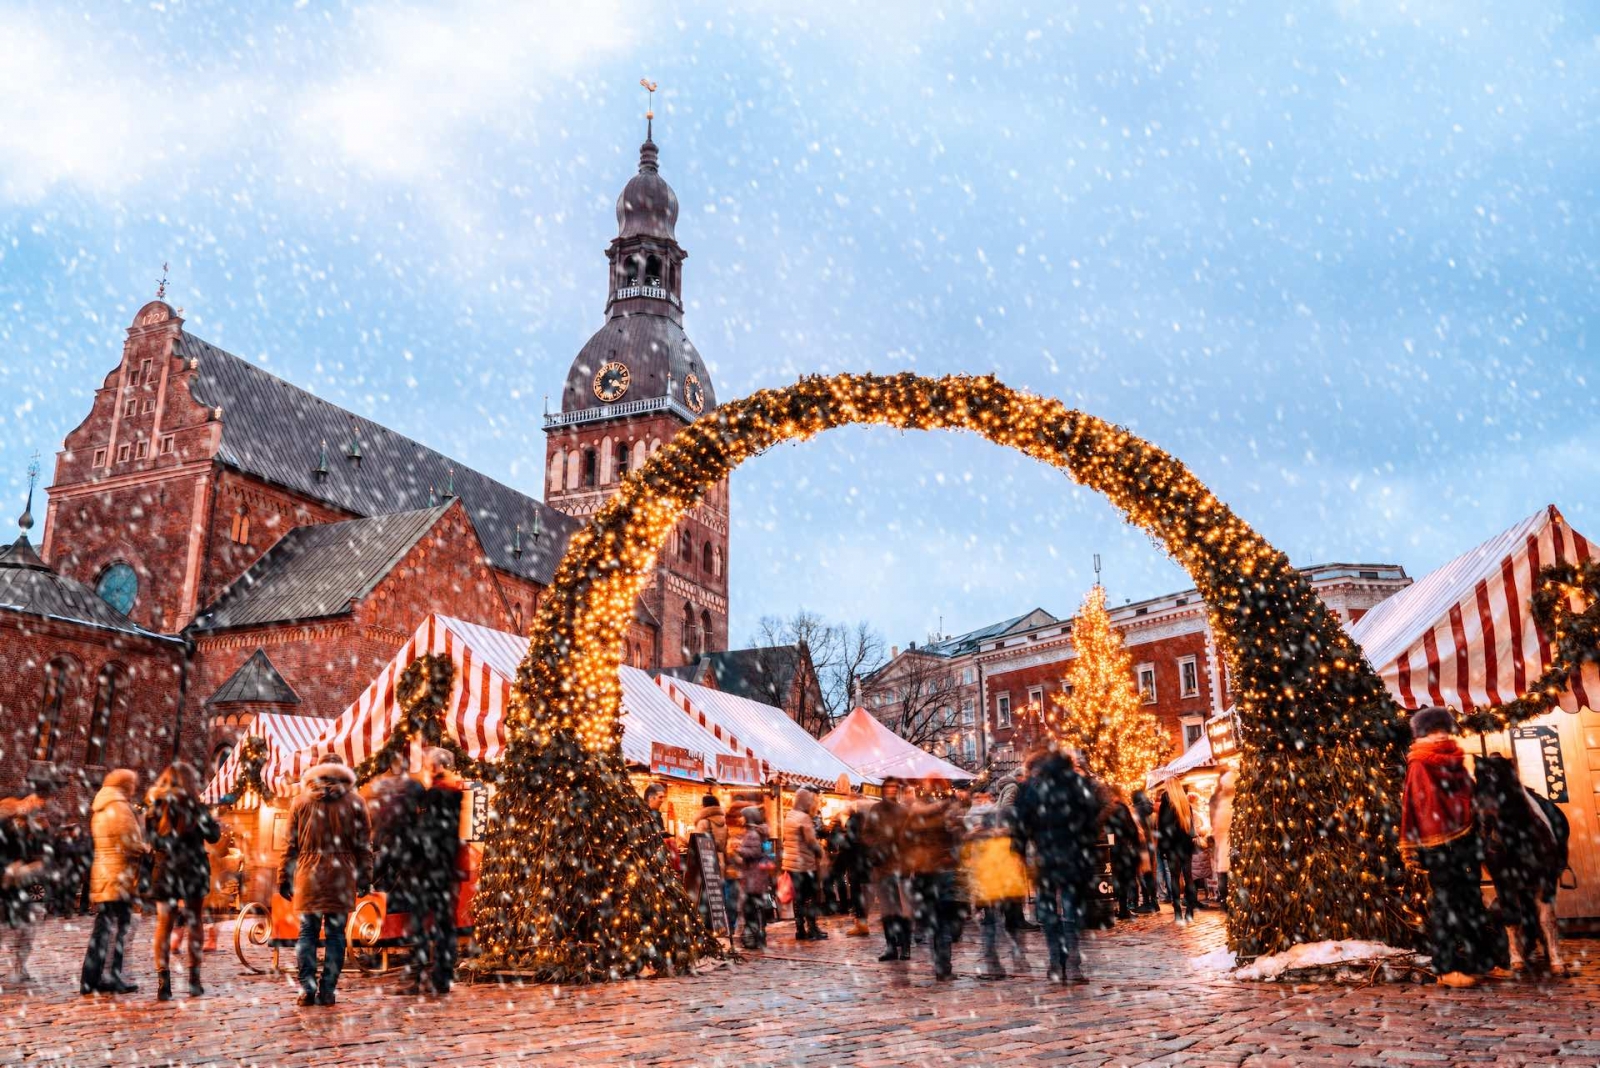 Weihnachtsmarkt und der Hauptweihnachtsbaum am Domplatz im alten Riga, Lettland